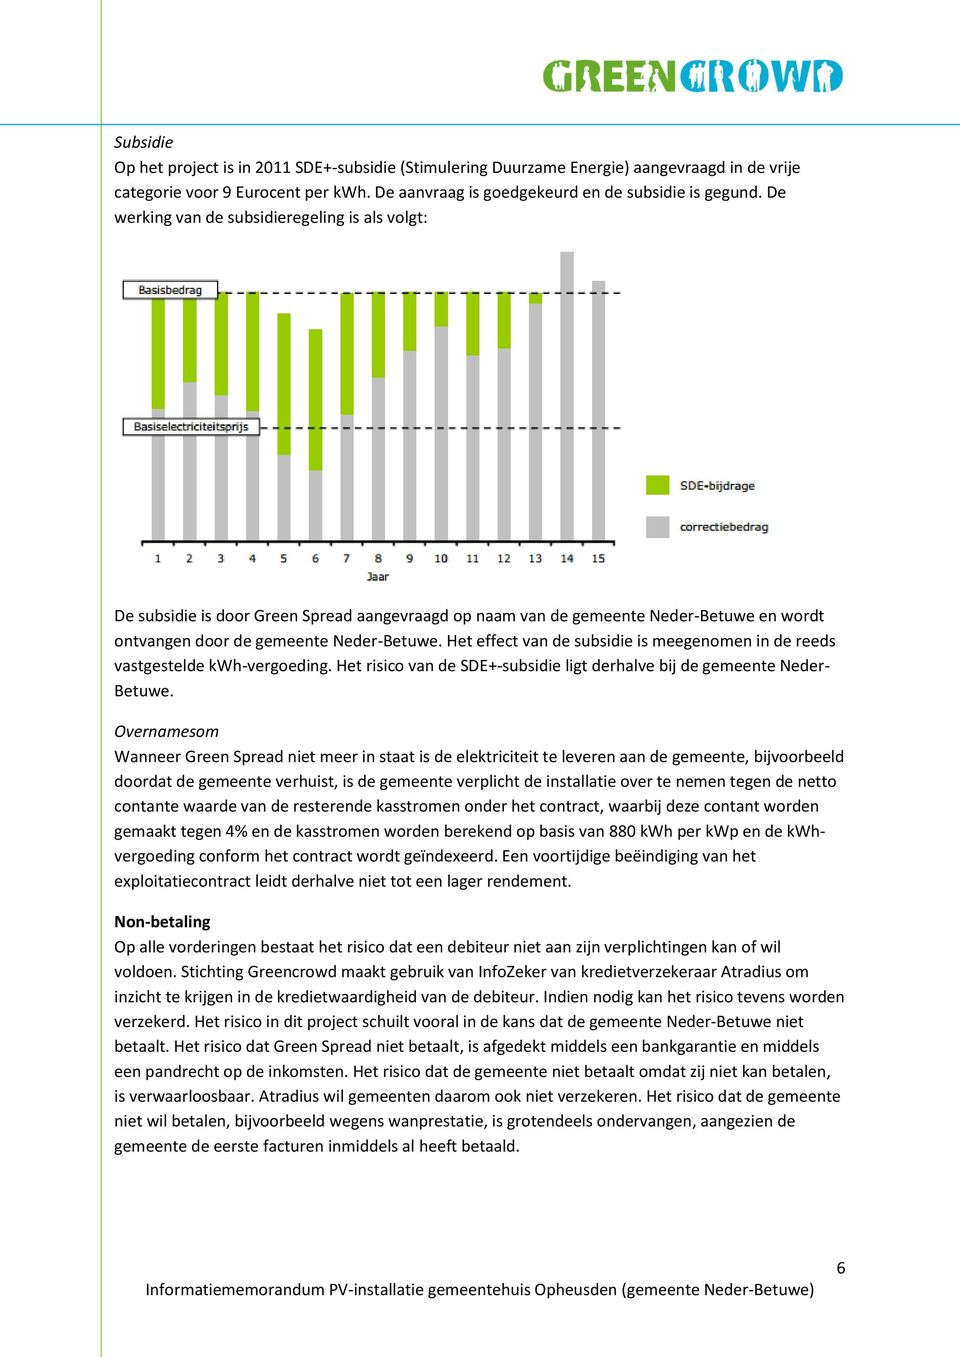 Het effect van de subsidie is meegenomen in de reeds vastgestelde kwh-vergoeding. Het risico van de SDE+-subsidie ligt derhalve bij de gemeente Neder- Betuwe.